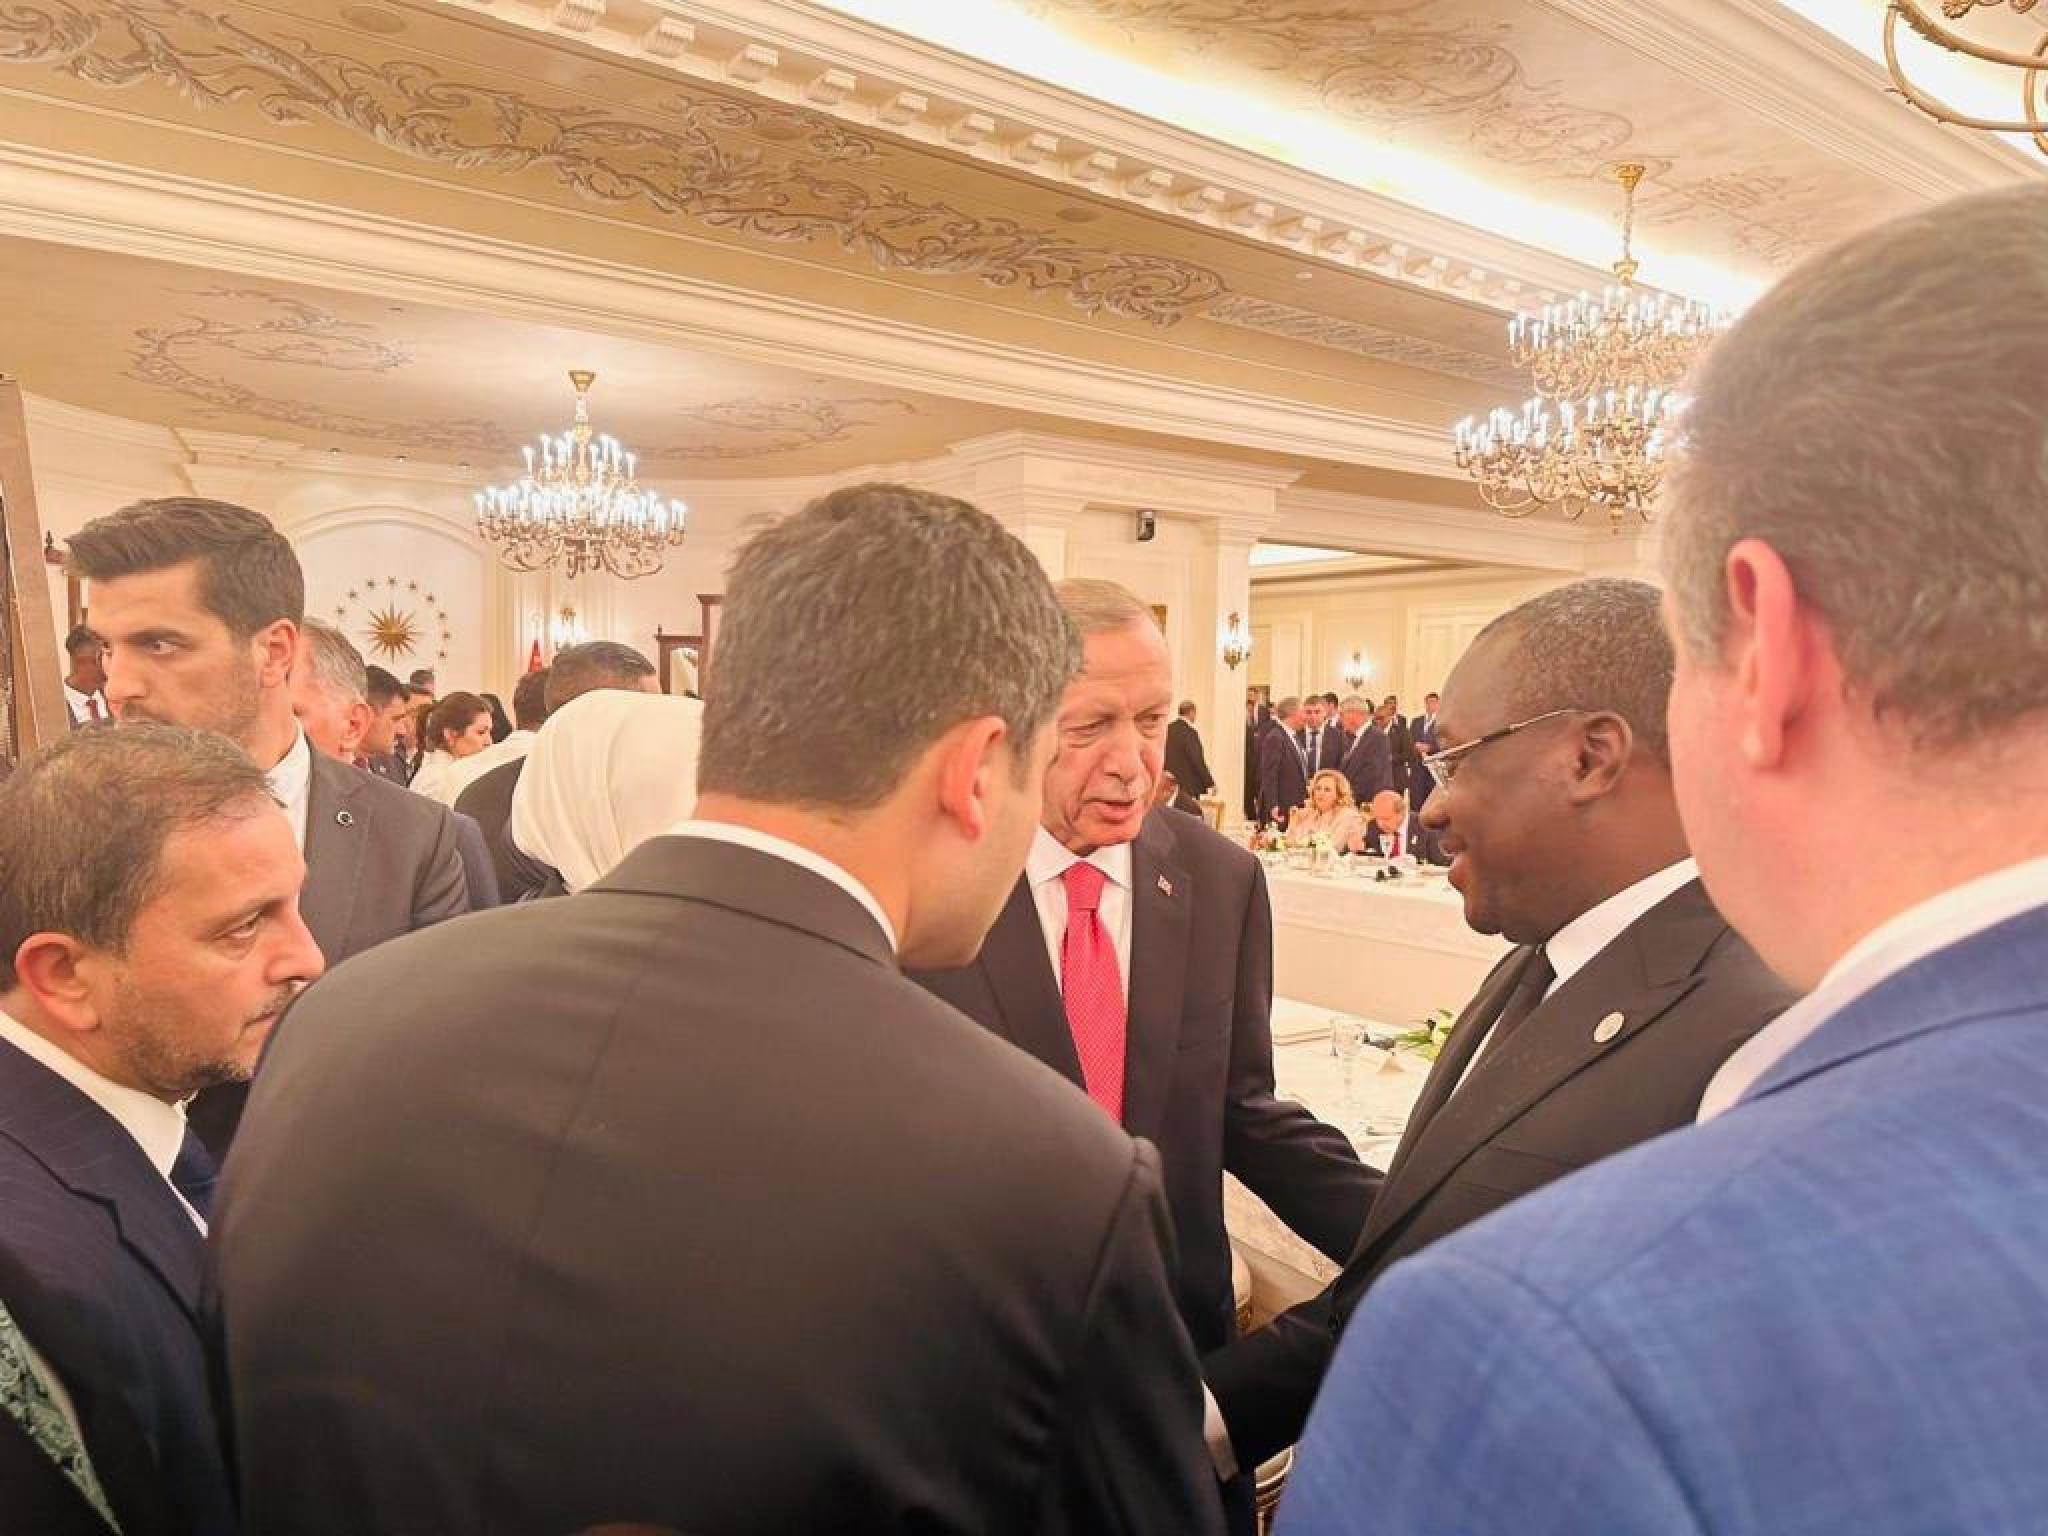 Le ministre d'État Congolais chargé de l'aménagement du territoire, Guy Loando et Recep Tayyip Erdogan, président Turque, lors d'un dîner après prestation de serment.